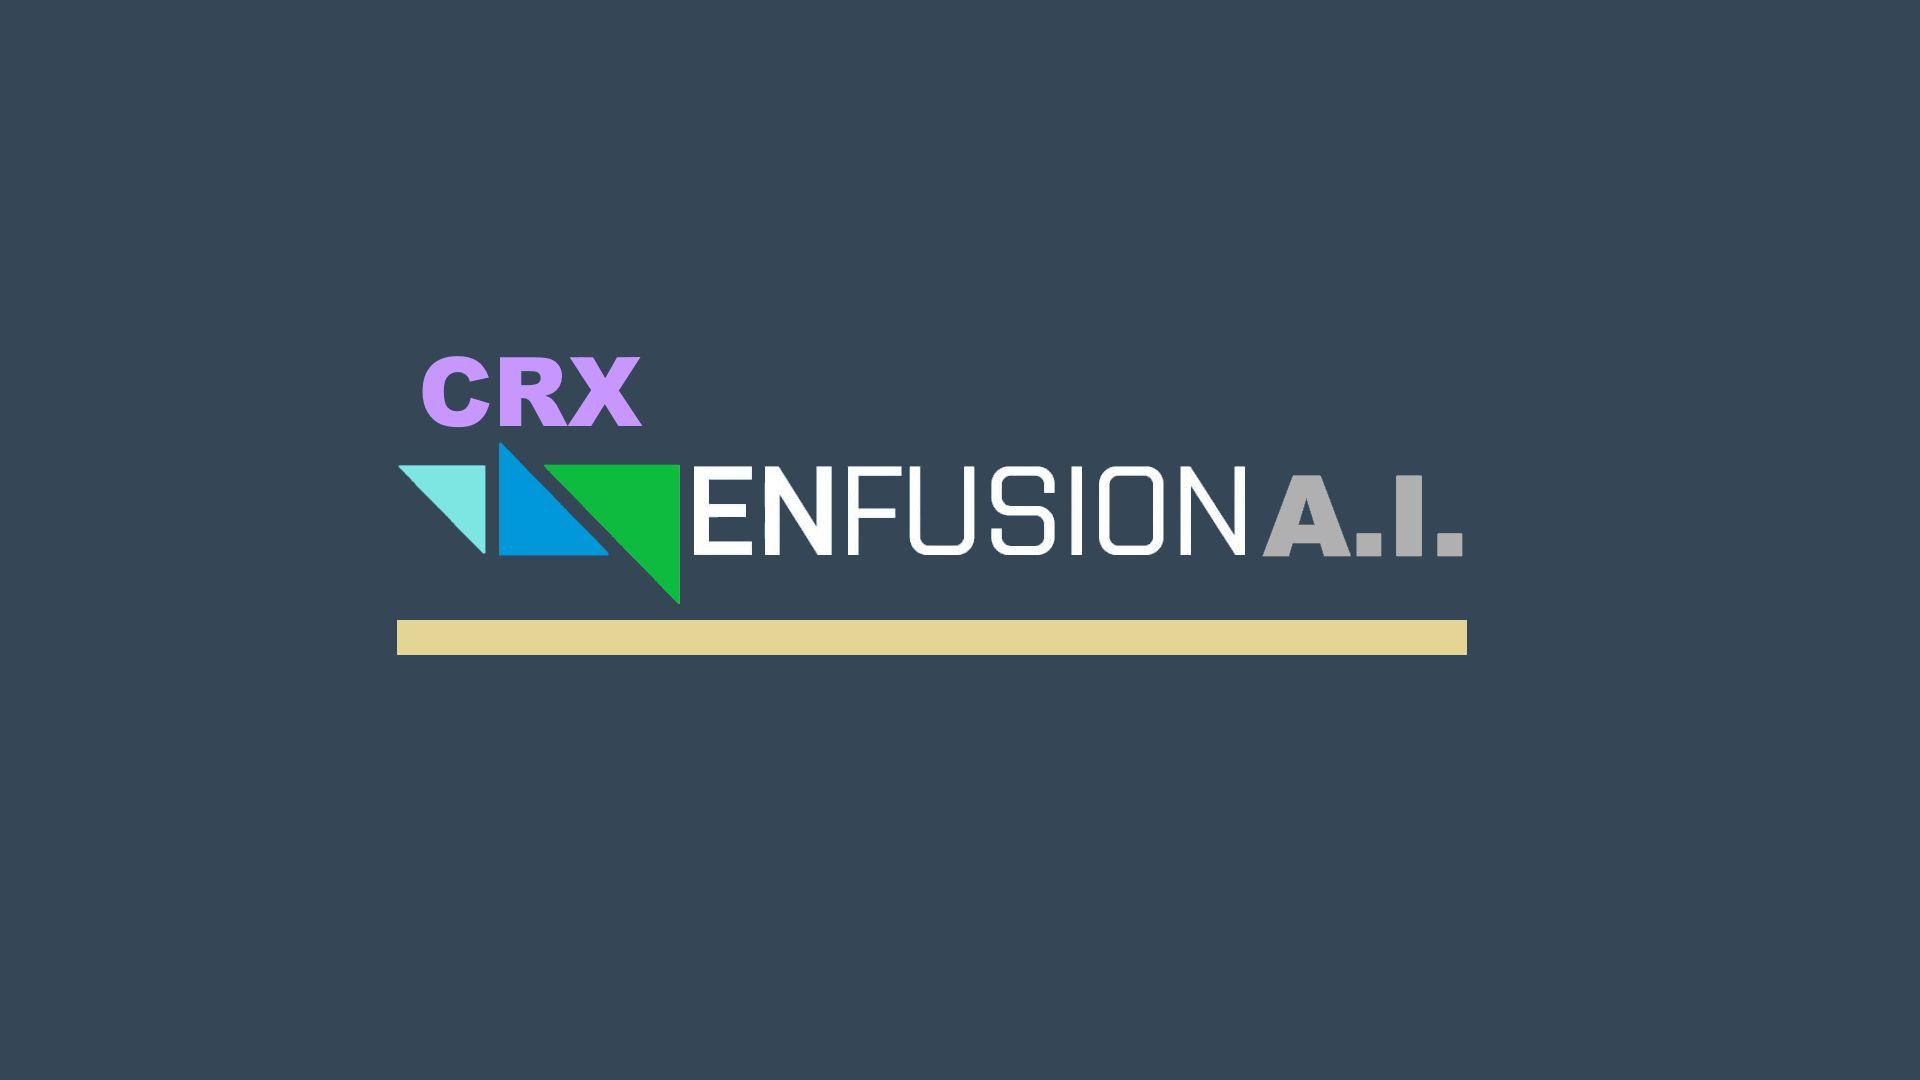 CRX Enfusion A.I.